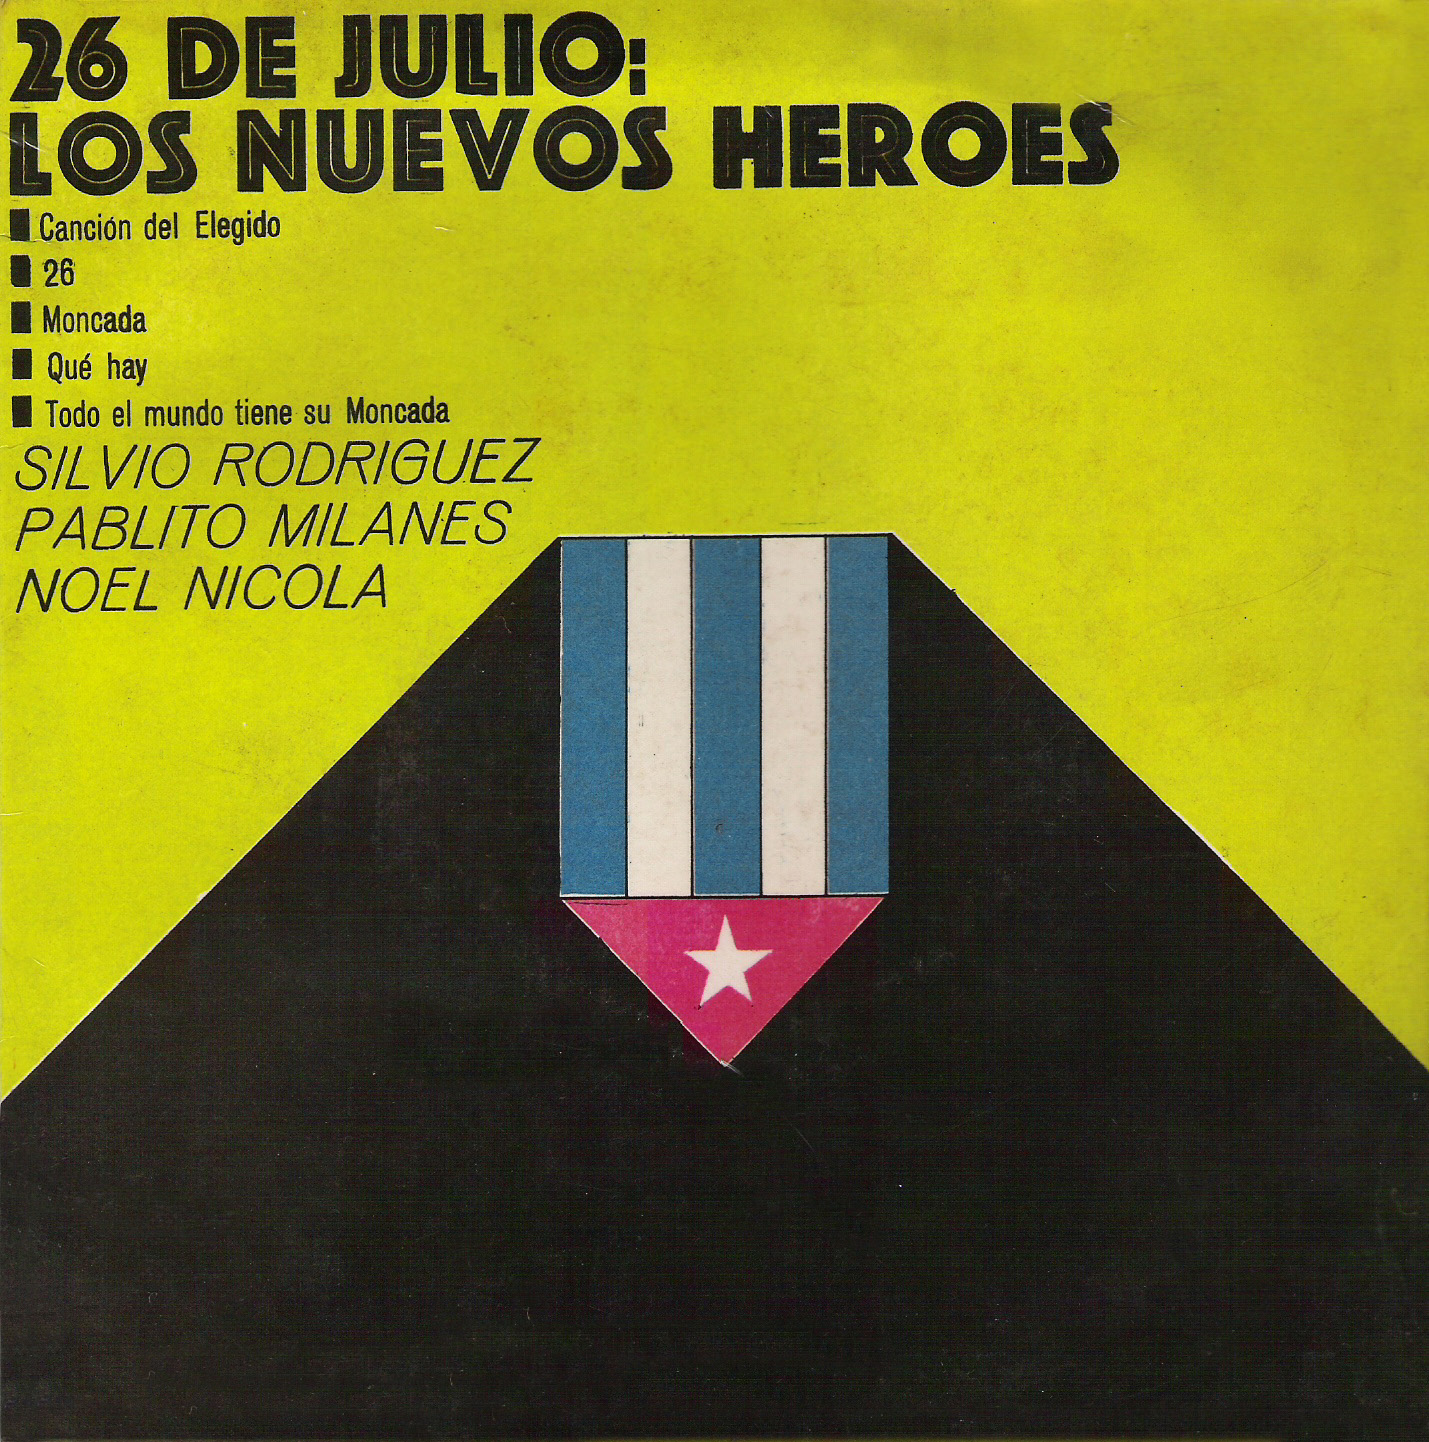 [Silvio+Pablo+Noel+-+26+de+julio+los+nuevos+heroes+-+Frontal.jpg]